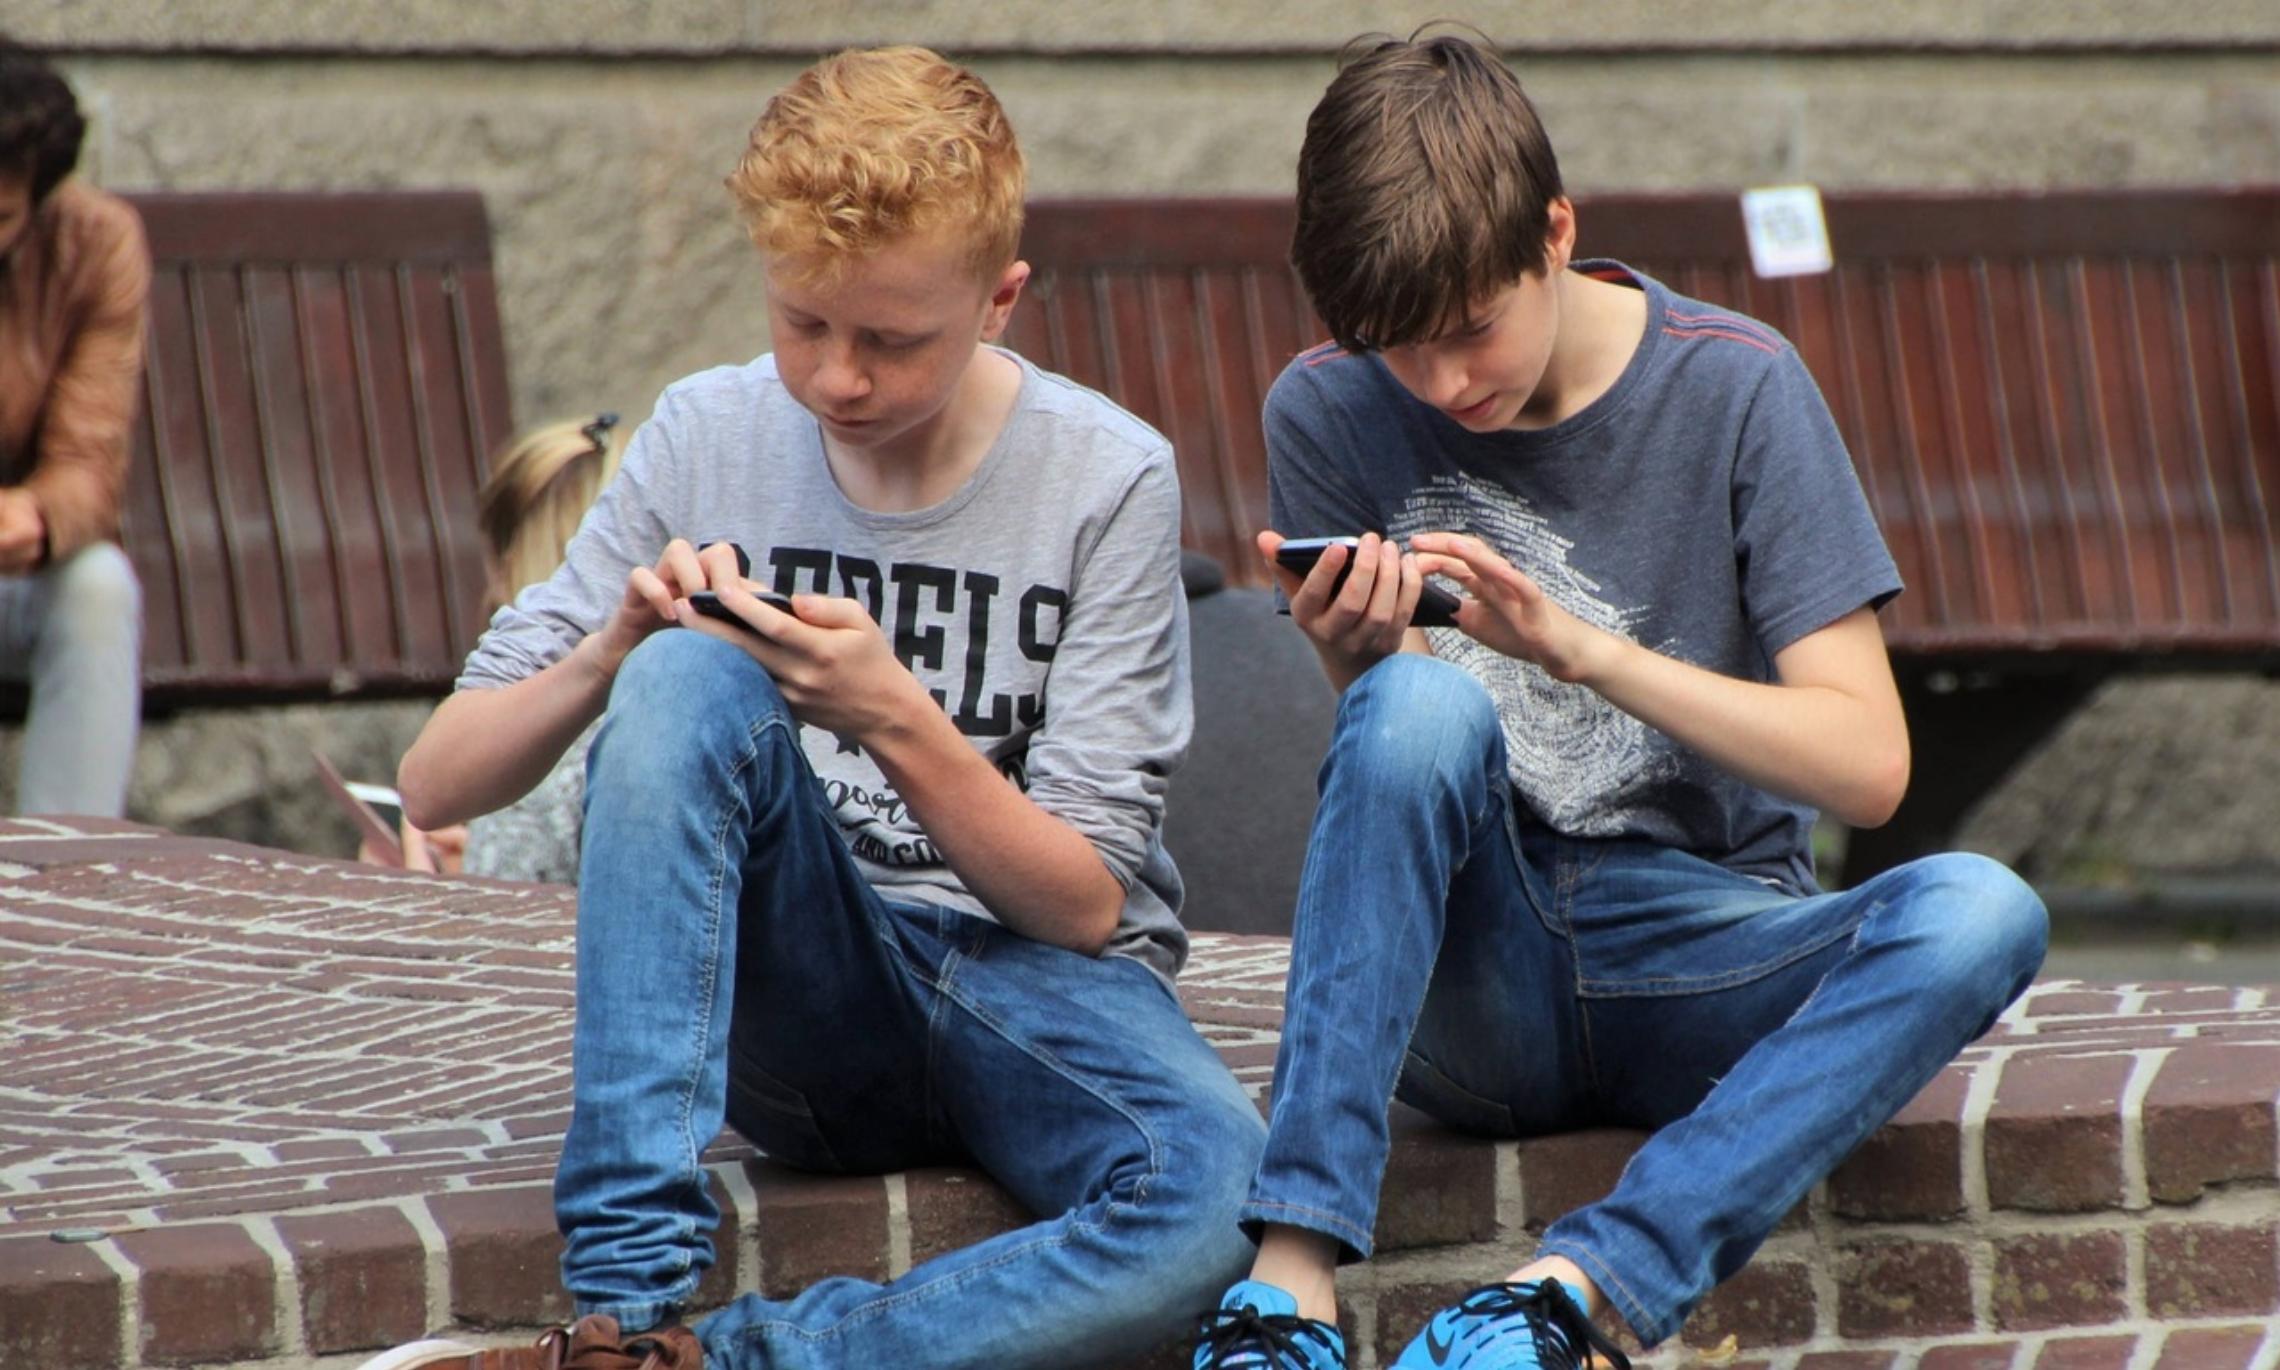 Teen boy forum. Современная молодежь. Подросток. Подросток со смартфоном. Подросток за телефоном.